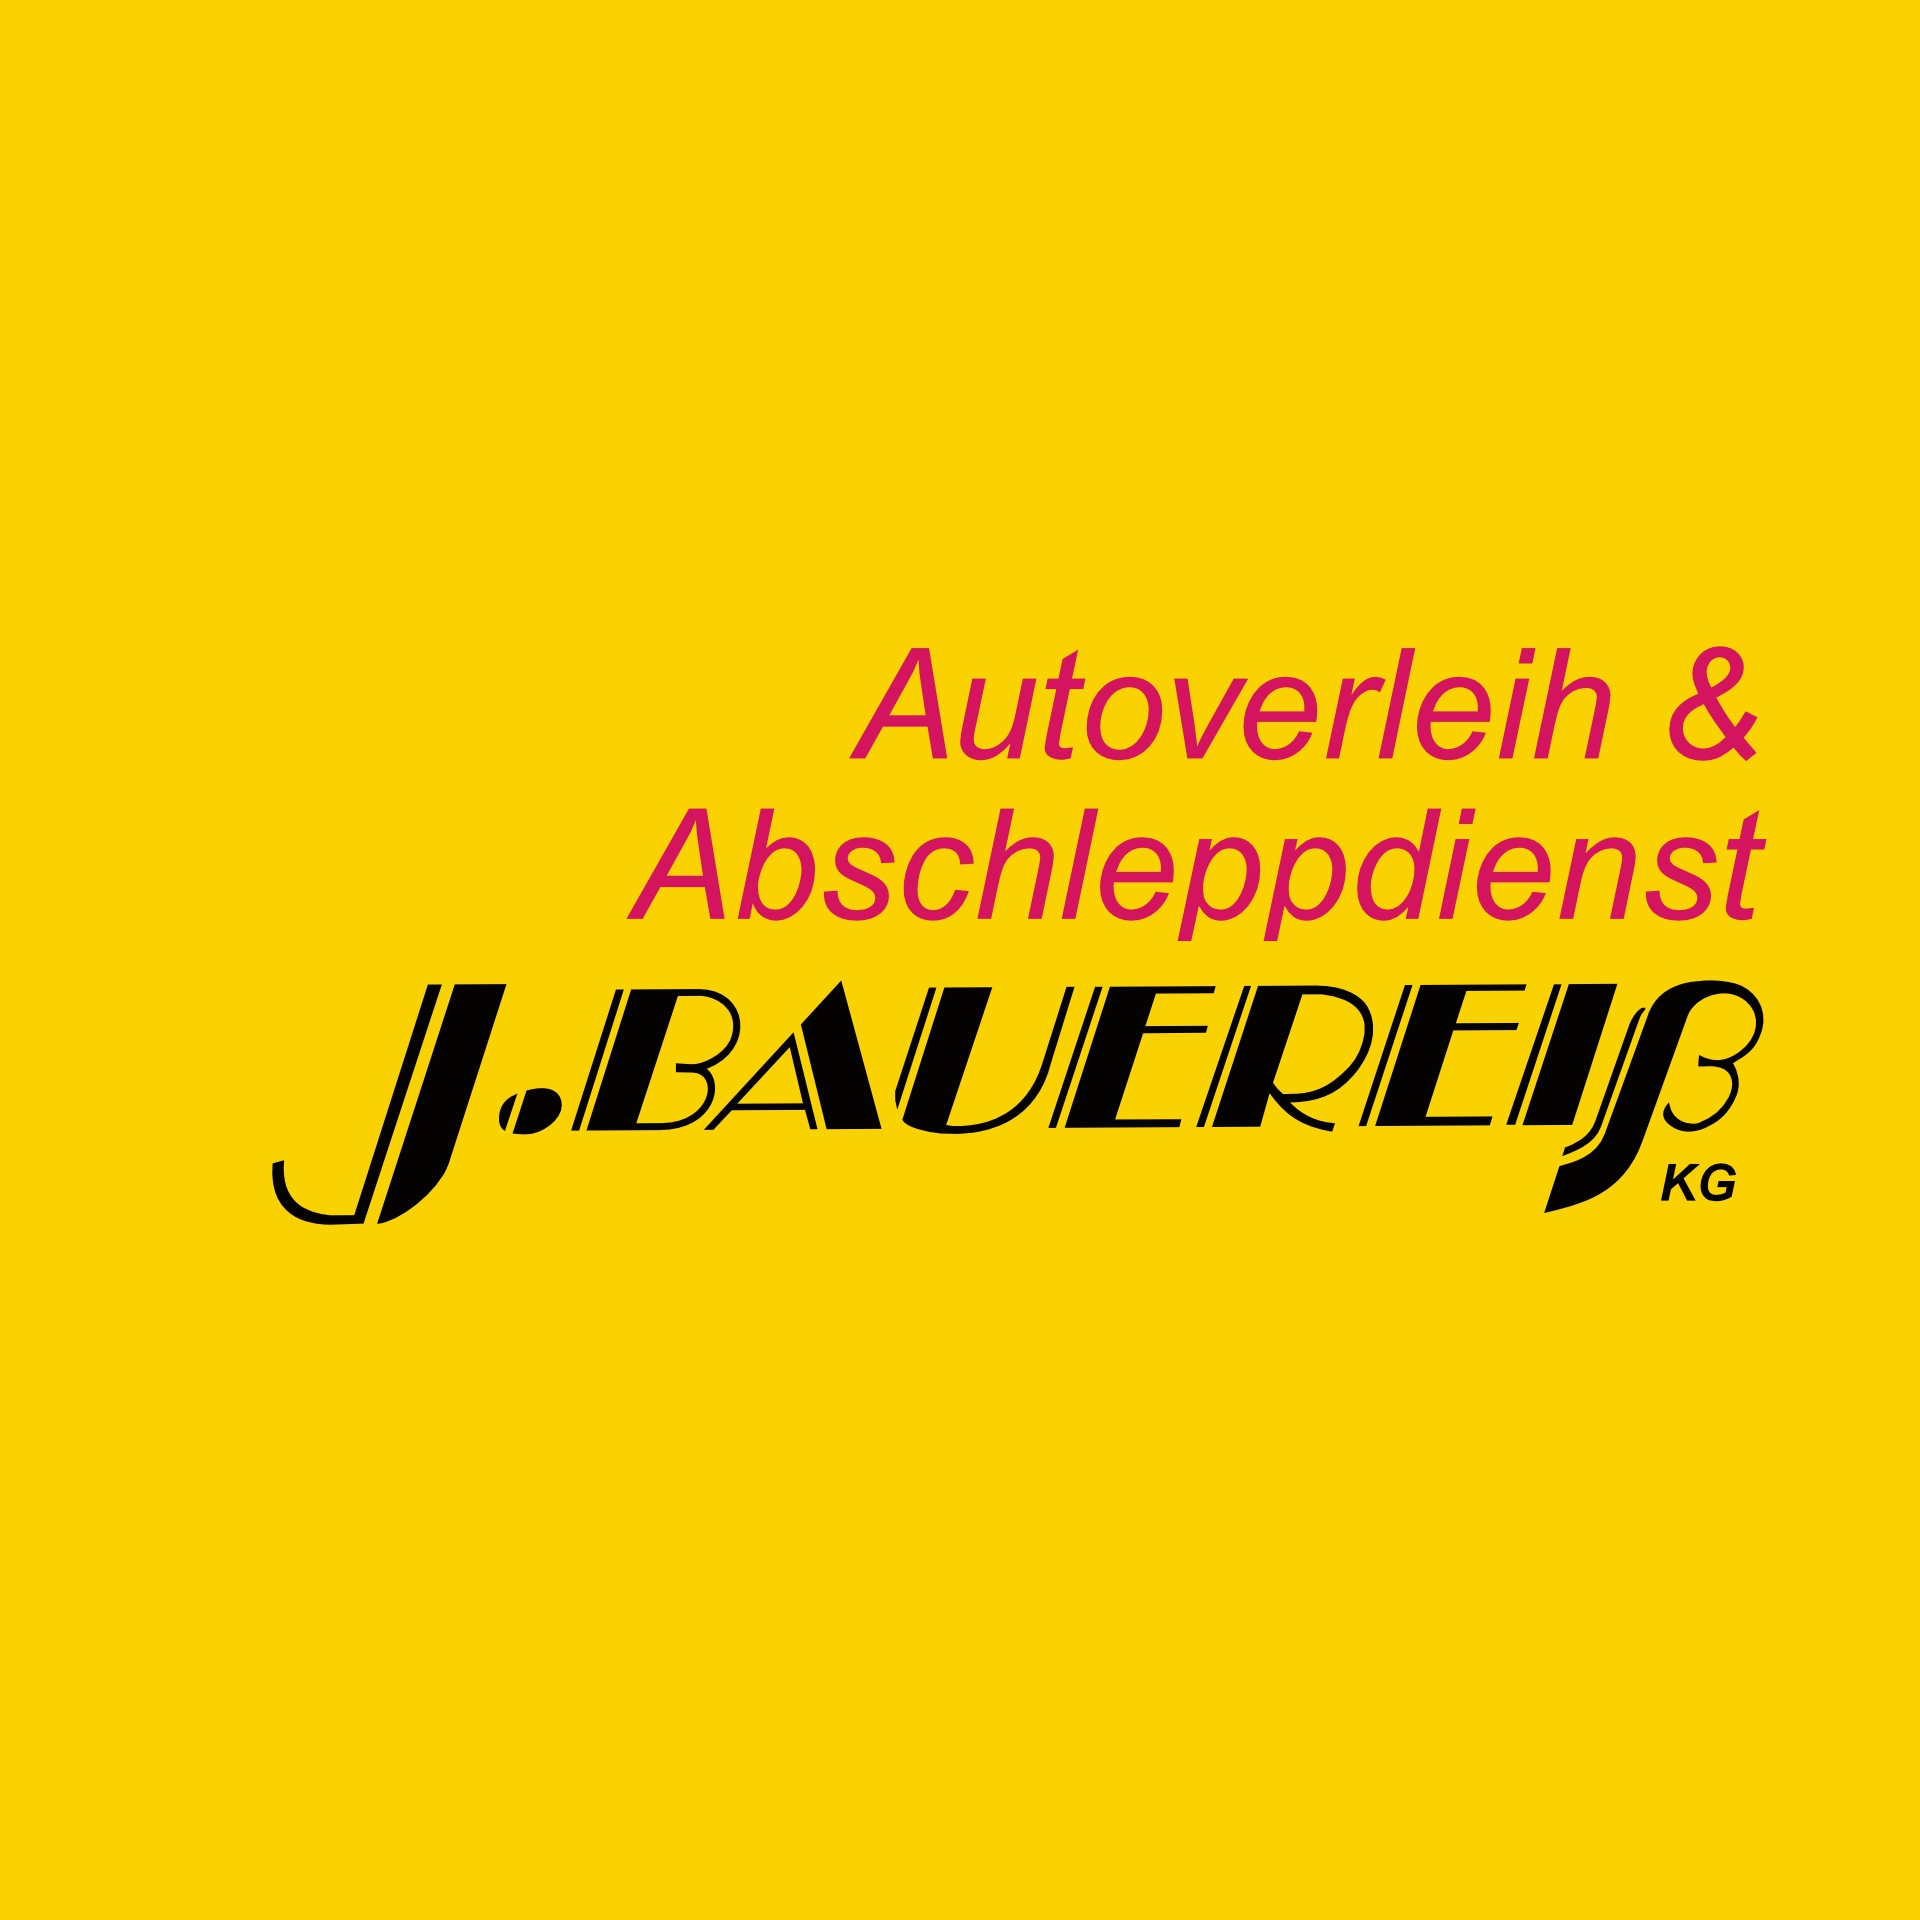 Autoverleih & Abschleppdienst J.Bauereiß in Neustadt an der Aisch - Logo